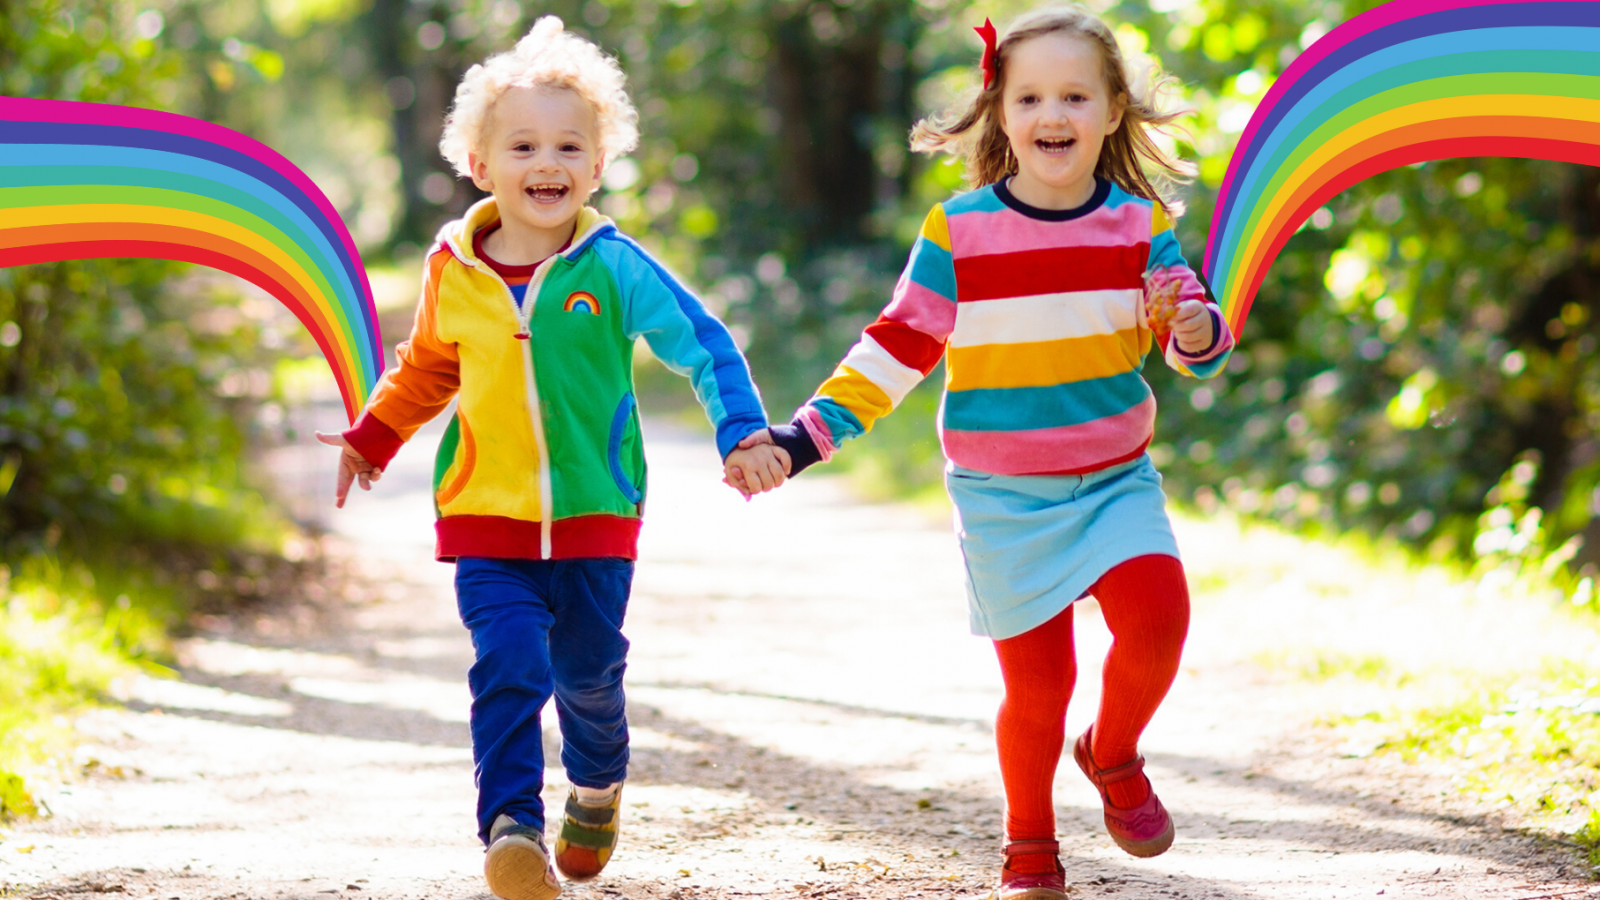 Colour Dash children running with rainbows